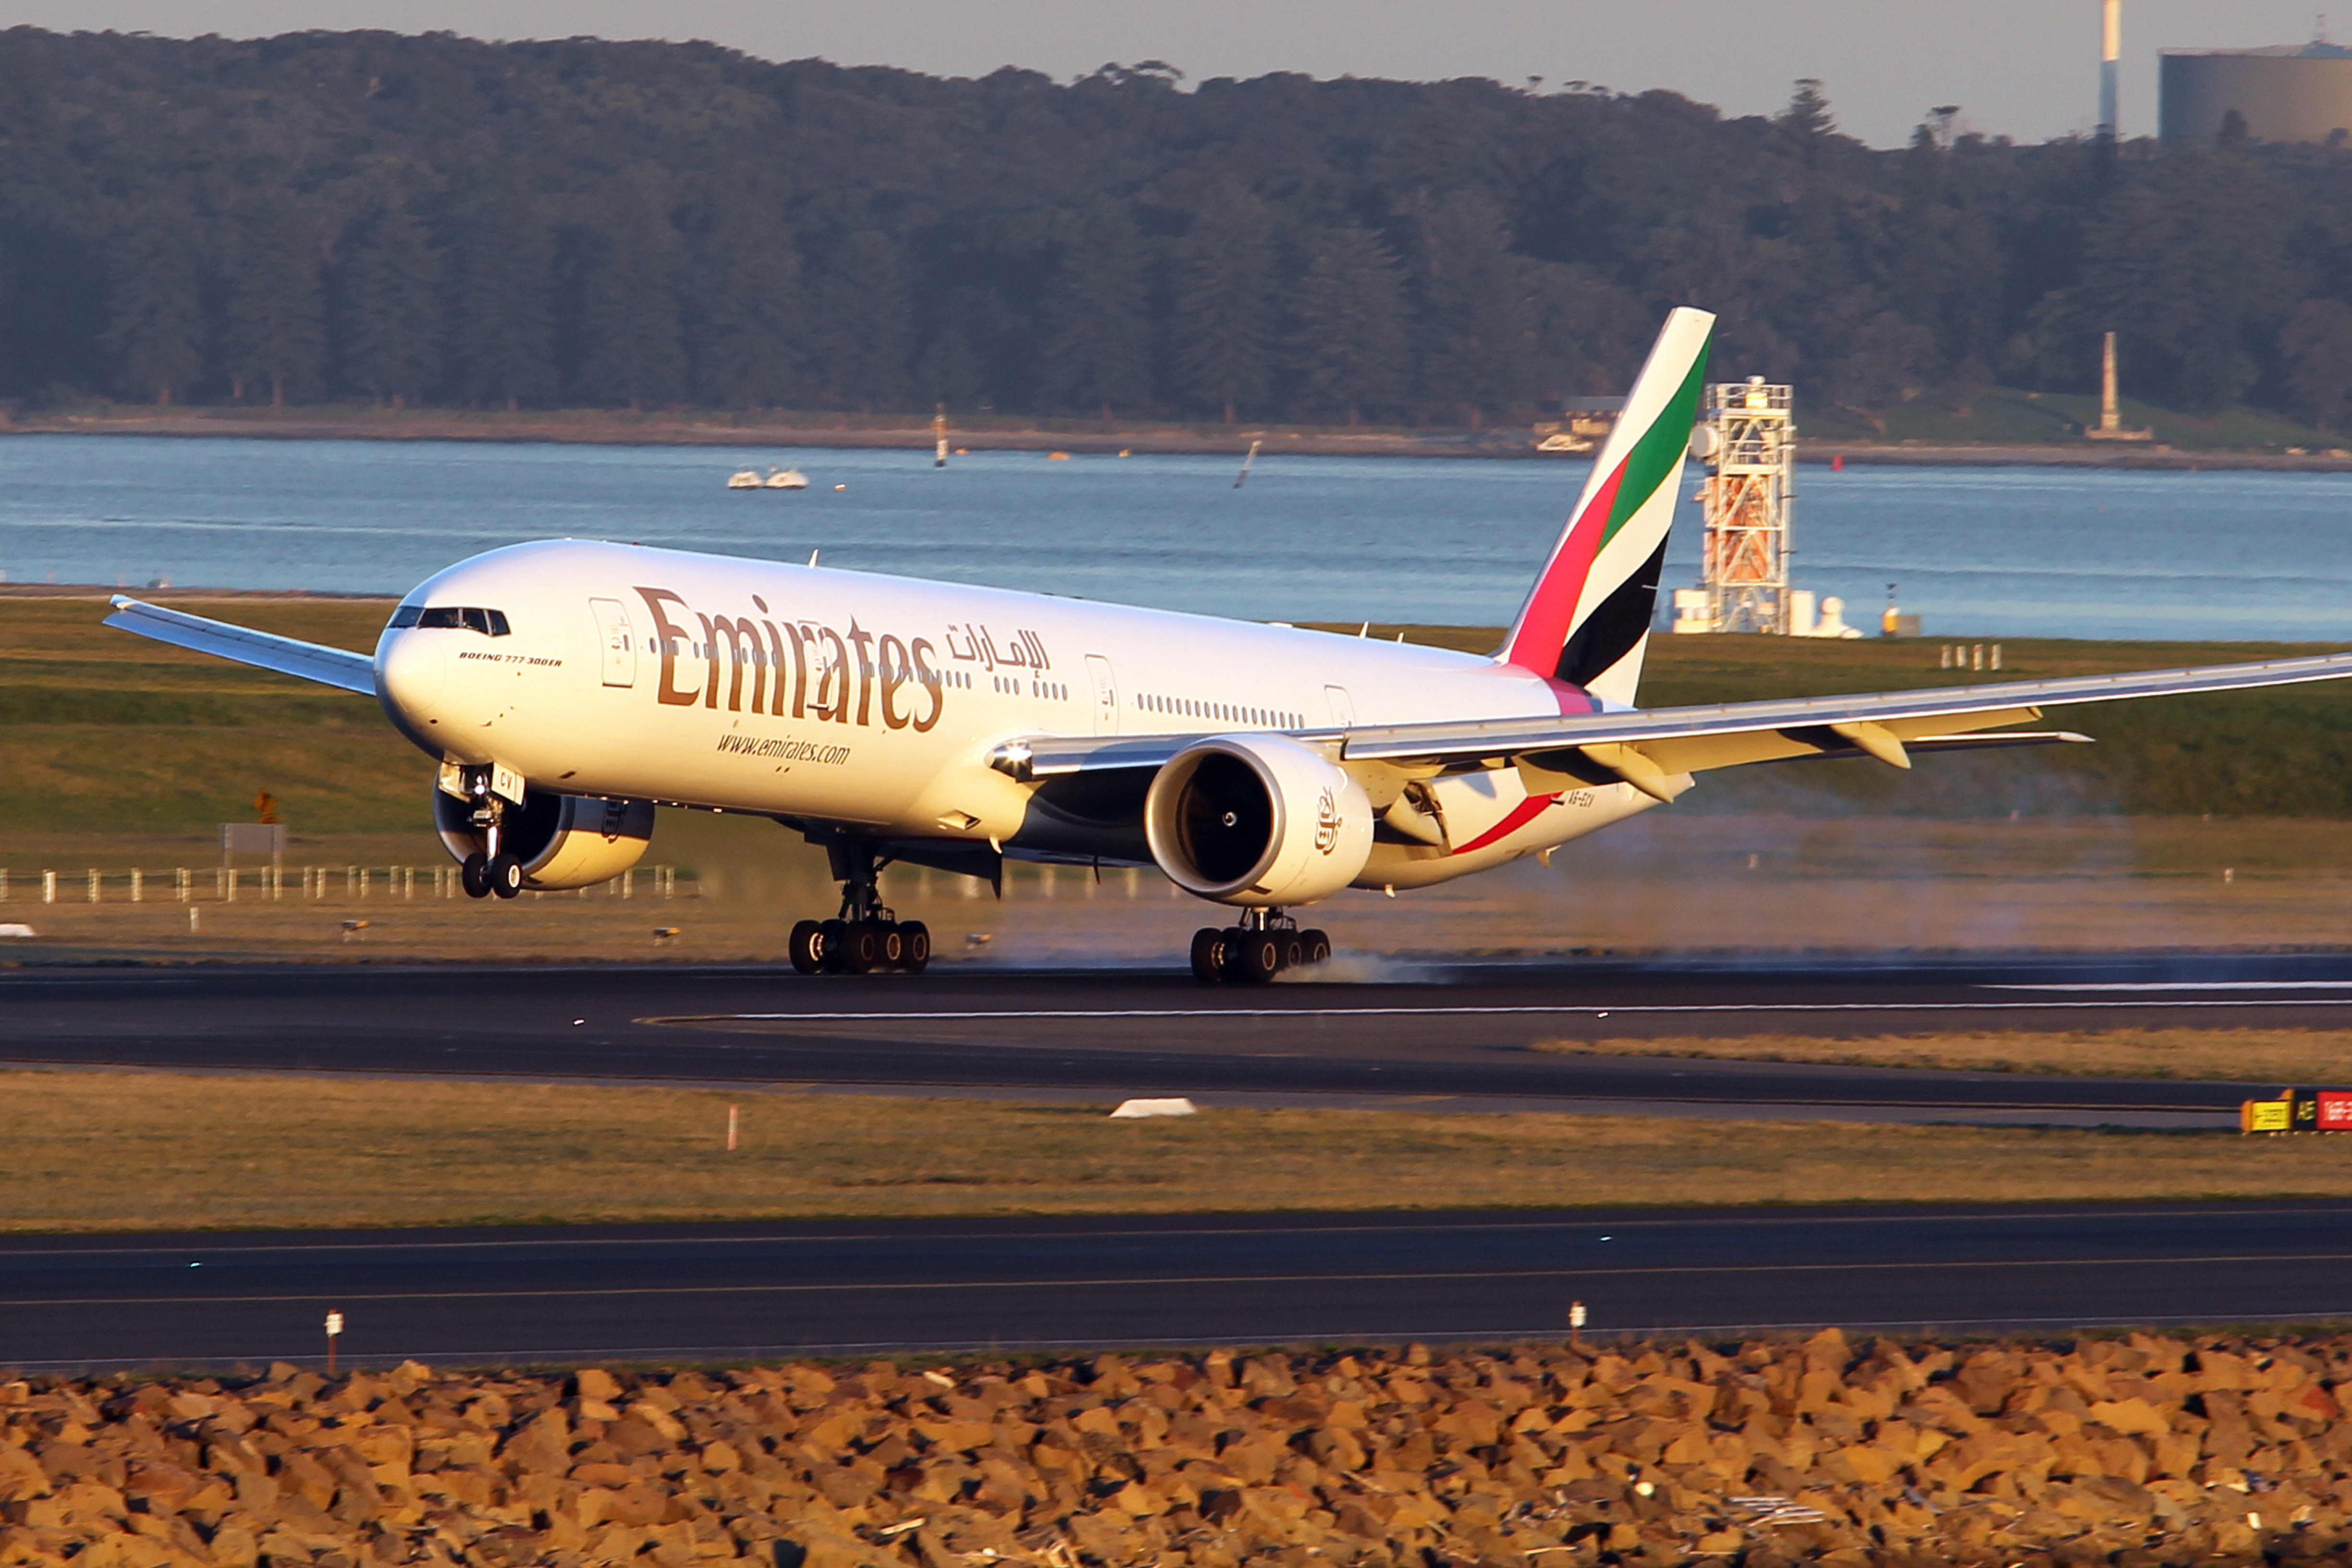 Emirates at Sydney Airport